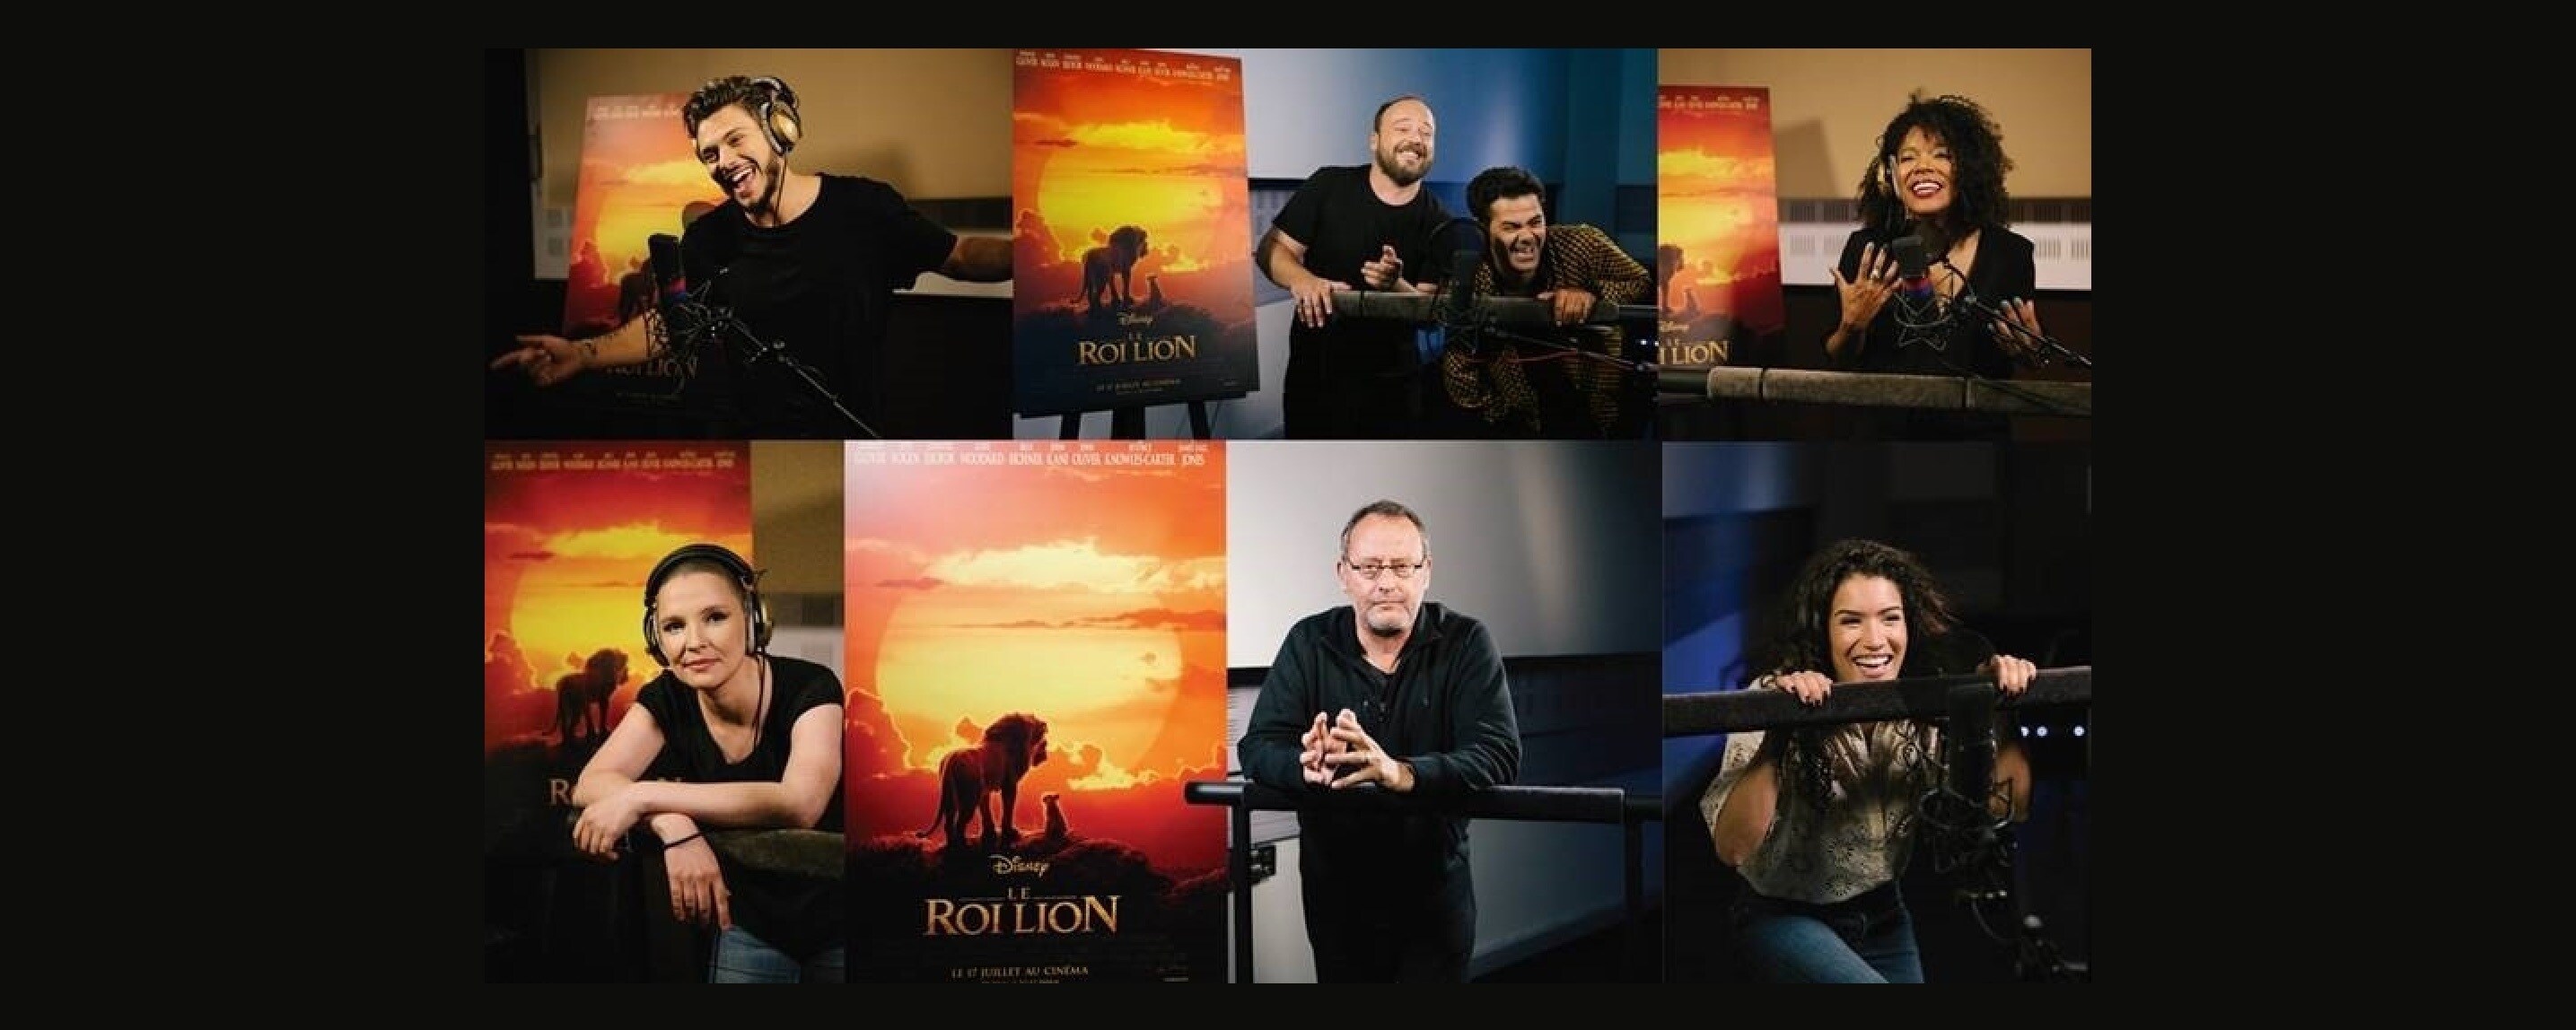 LE ROI LION – Découvrez les voix françaises du film événement de Jon Favreau